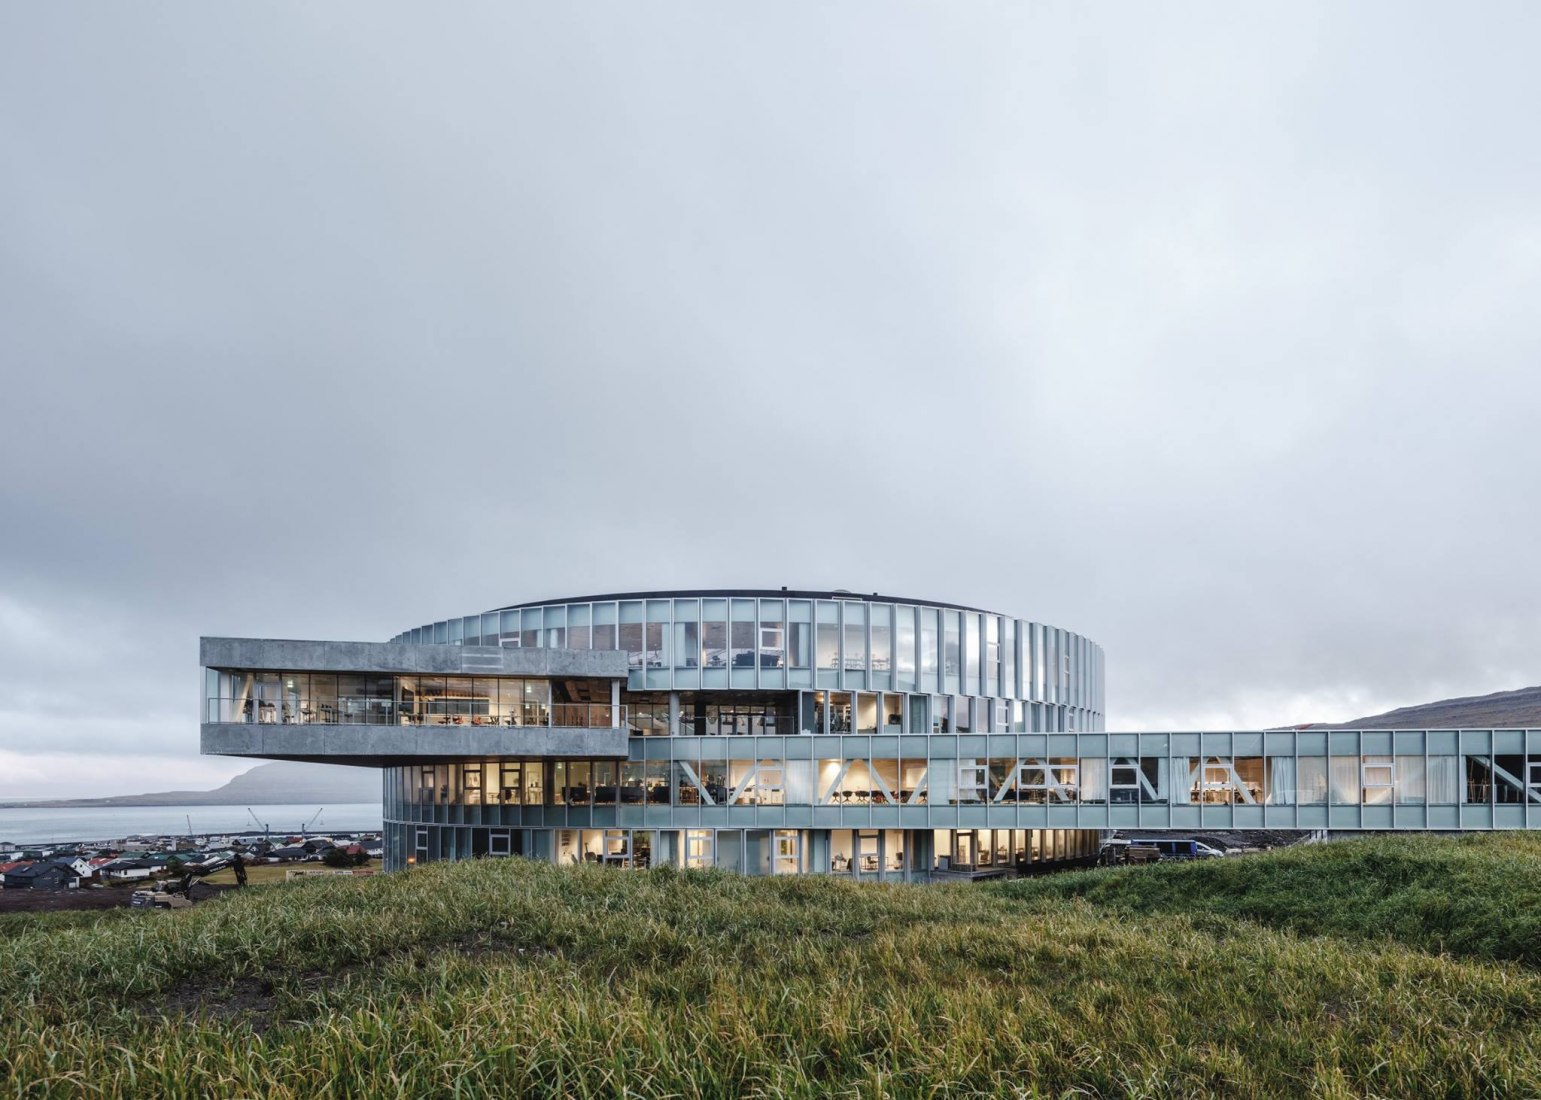 Nuevo Centro de Educación Glasir en Torshavn por BIG. Fotografaía por Rasmus Hjortshoj